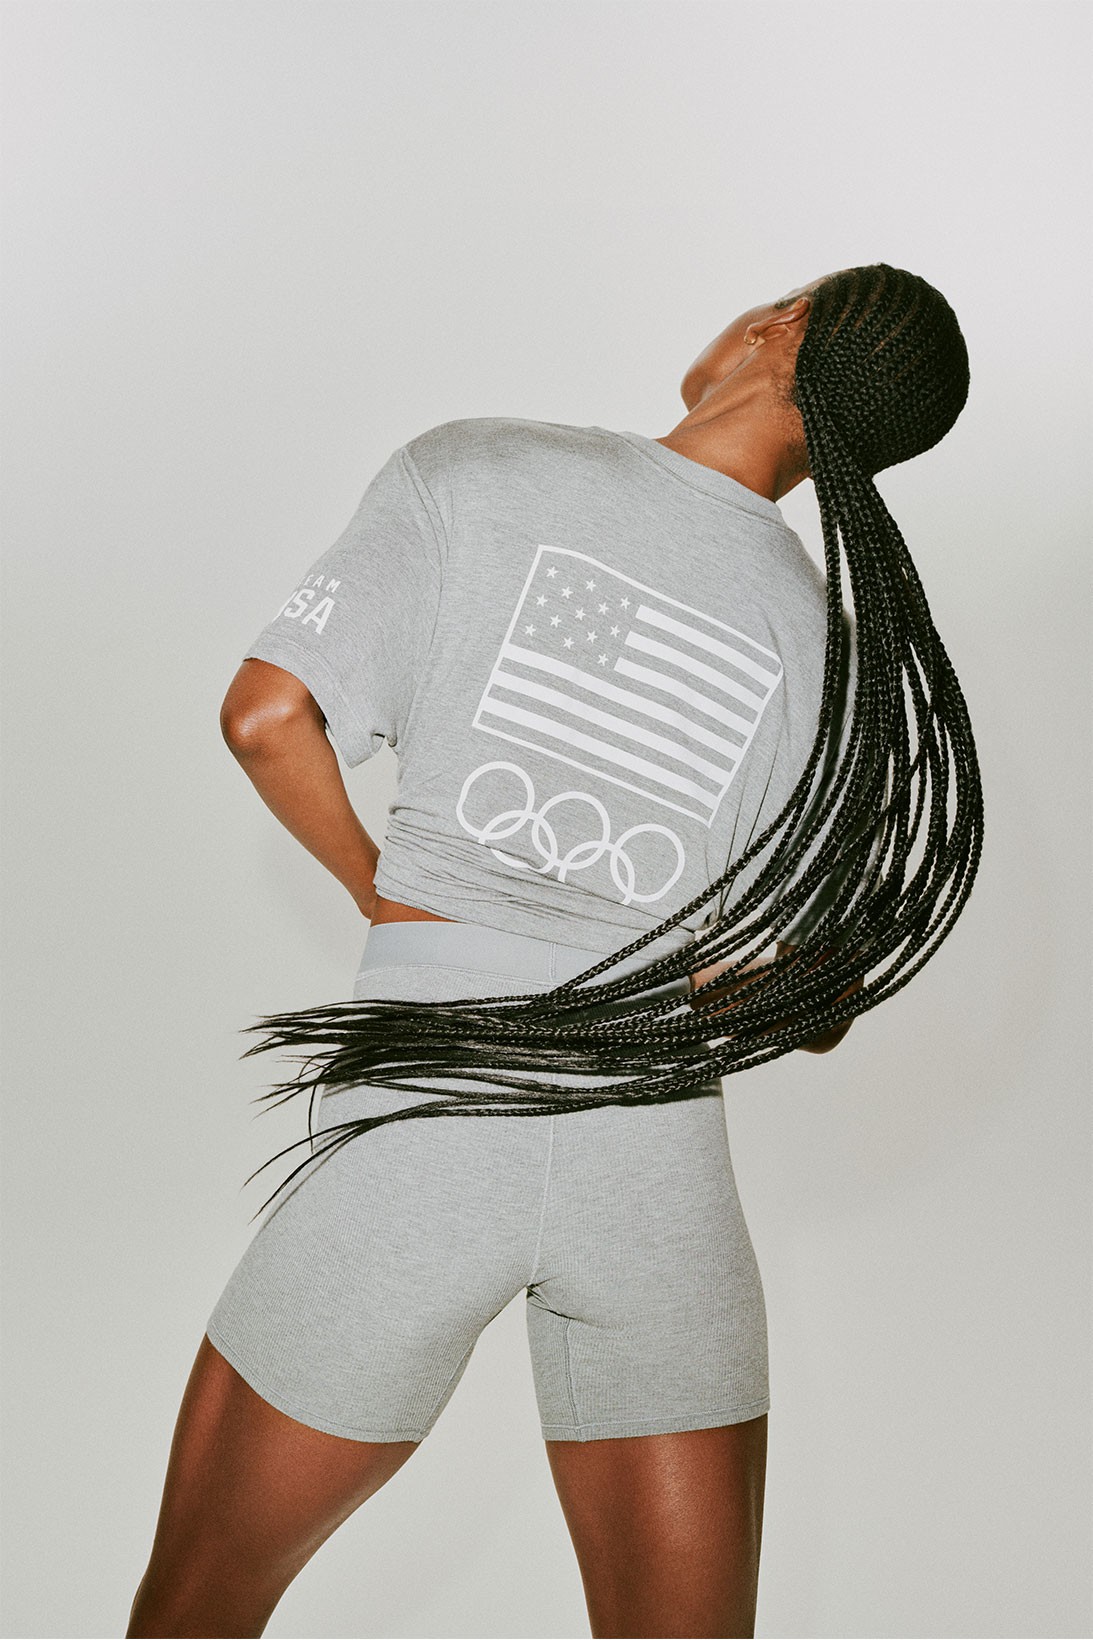 Спортсменки из олимпийской сборной США получат комплекты белья от Skims Ким Кардашьян (фото 5)